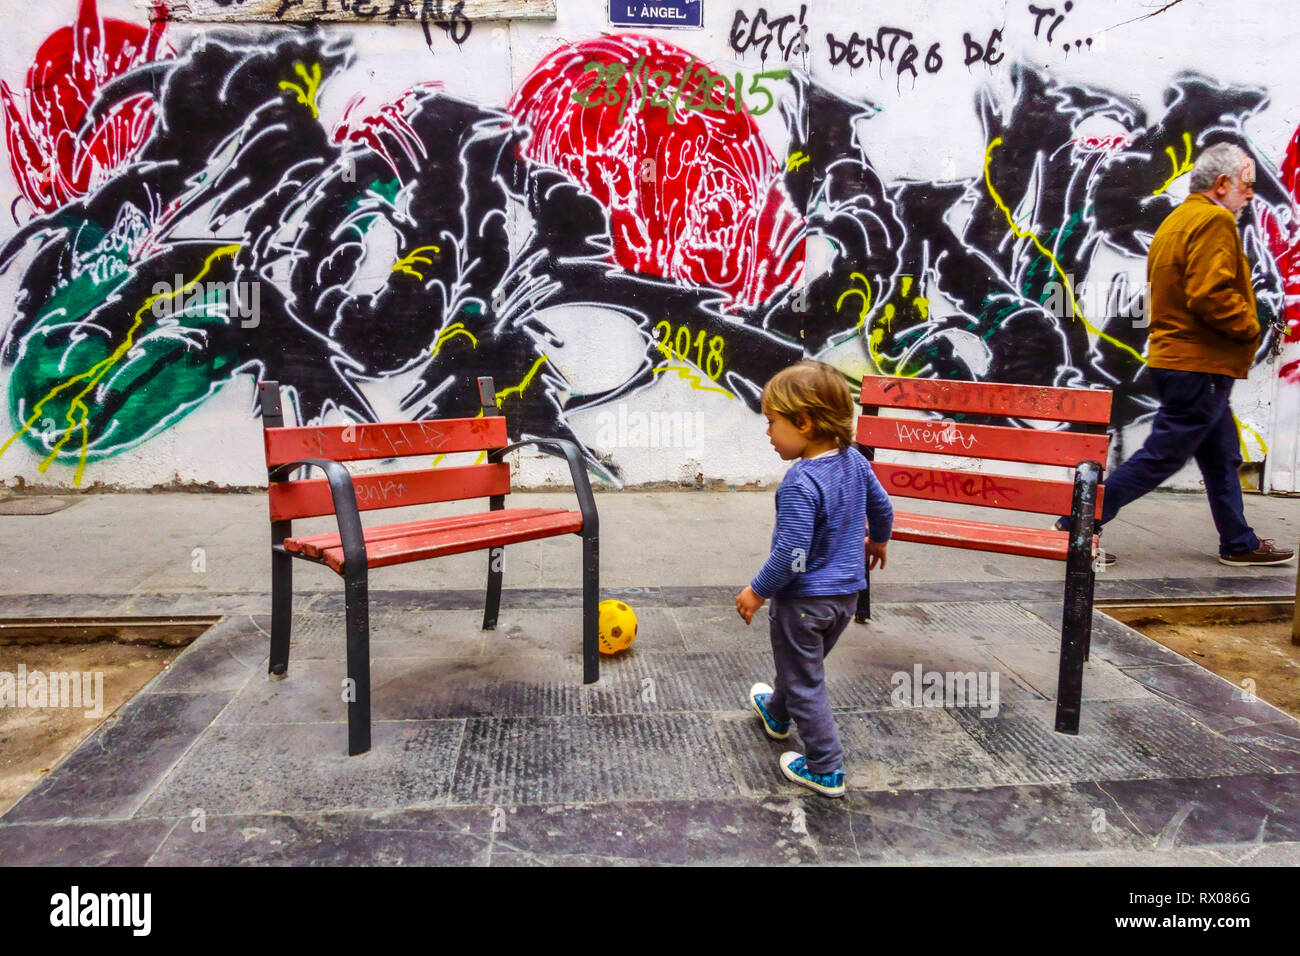 Vista sulla strada, UN bambino che gioca con una palla e un uomo che passa intorno a colorati muri di graffiti, Valencia, quartiere della città vecchia di El Carmen Foto Stock